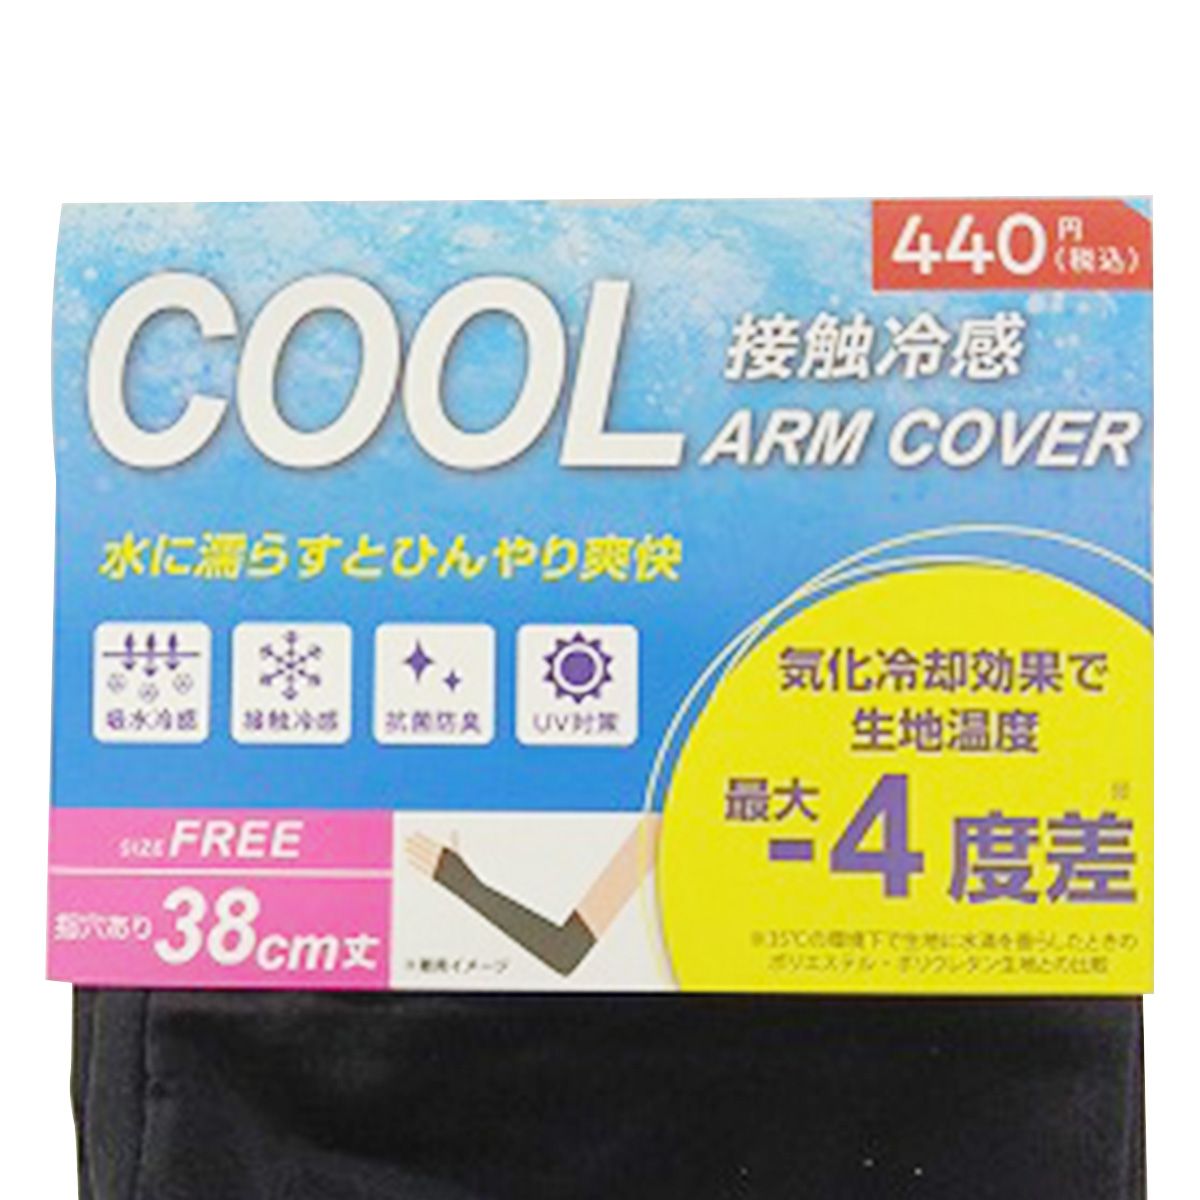 アームカバー 腕カバー 指穴有り接触冷感 抗菌防臭加工 UVカット率99% 約38cm 365528